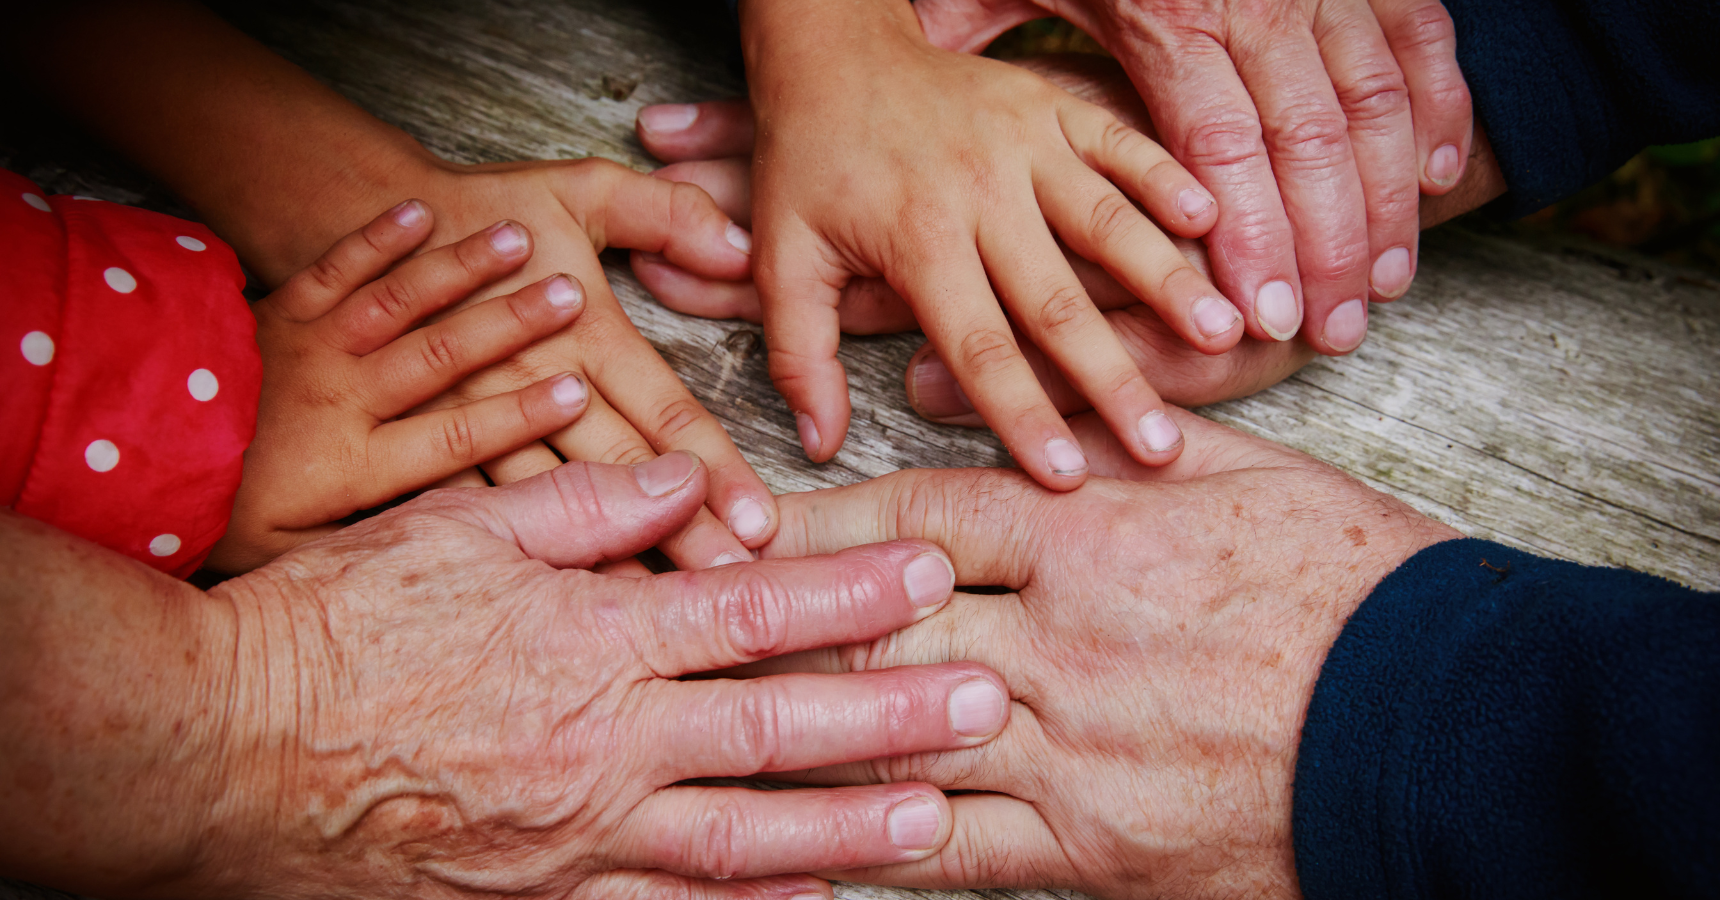 Faltige Hände von älteren Menschen und kleine Hände von Kindern liegen übereinander und nah beieinander. (Symbolfoto)